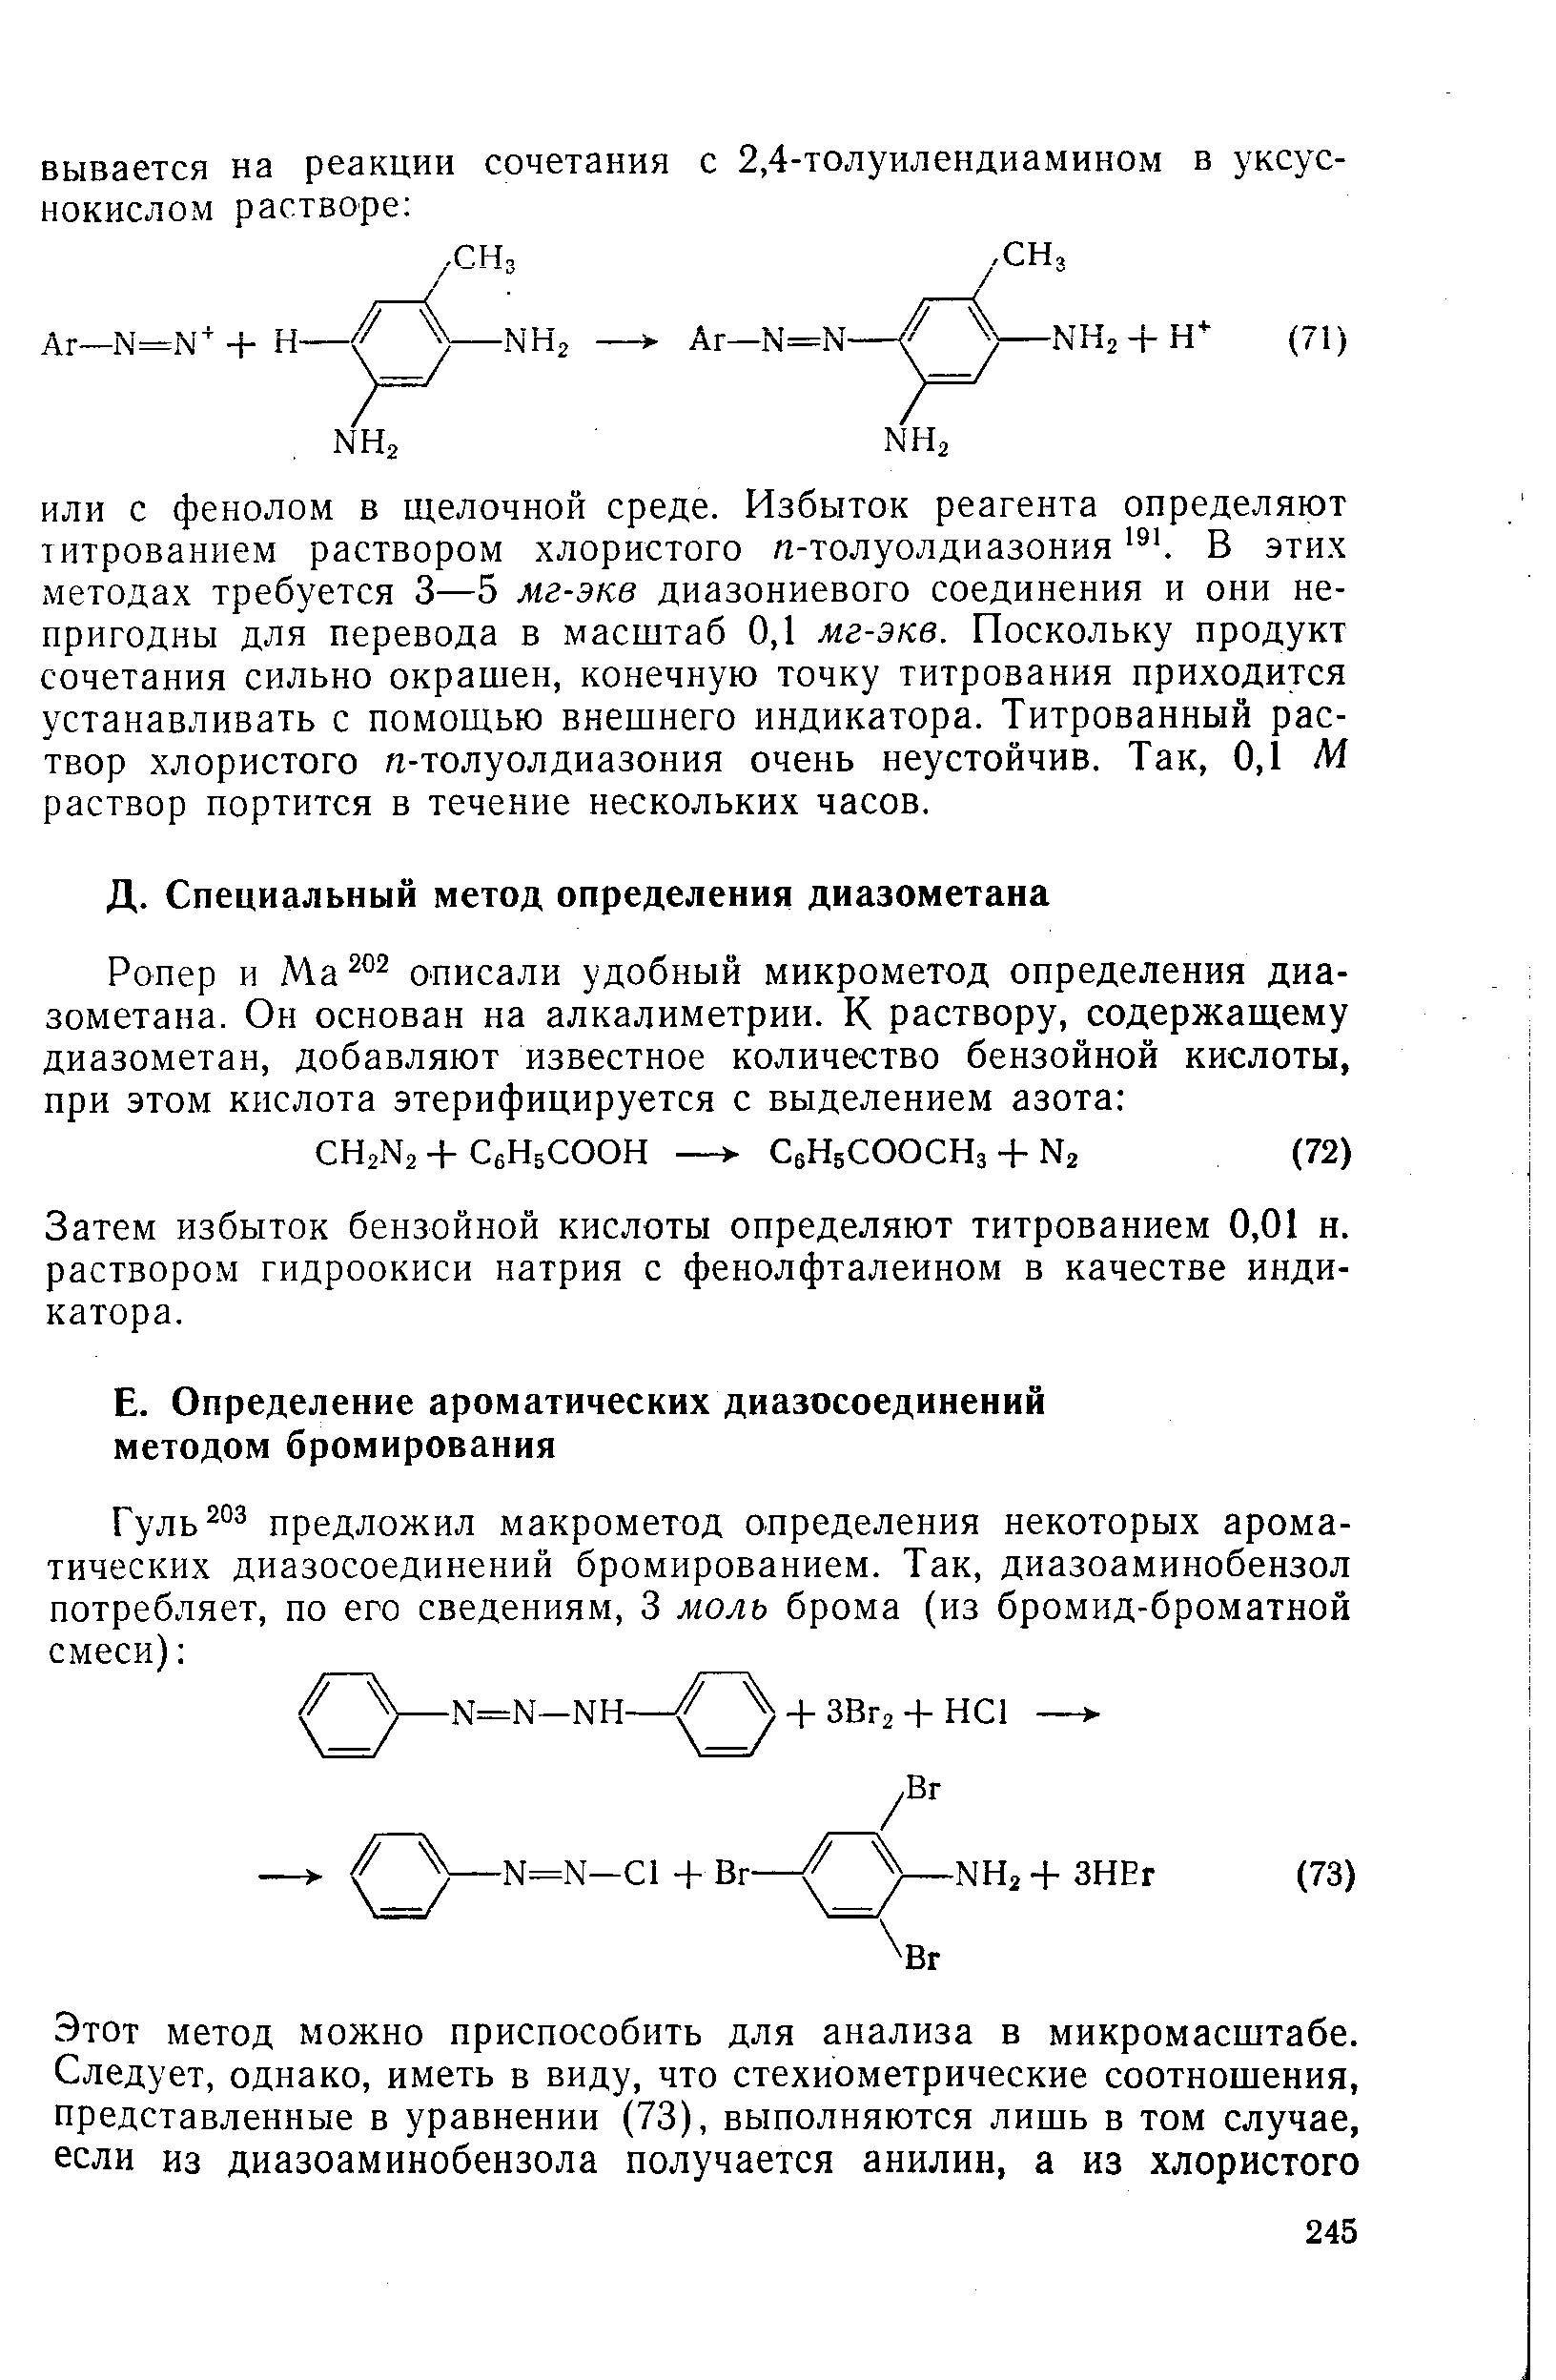 Затем избыток бензойной кислоты определяют титрованием 0,01 н. раствором гидроокиси натрия с фенолфталеином в качестве индикатора.